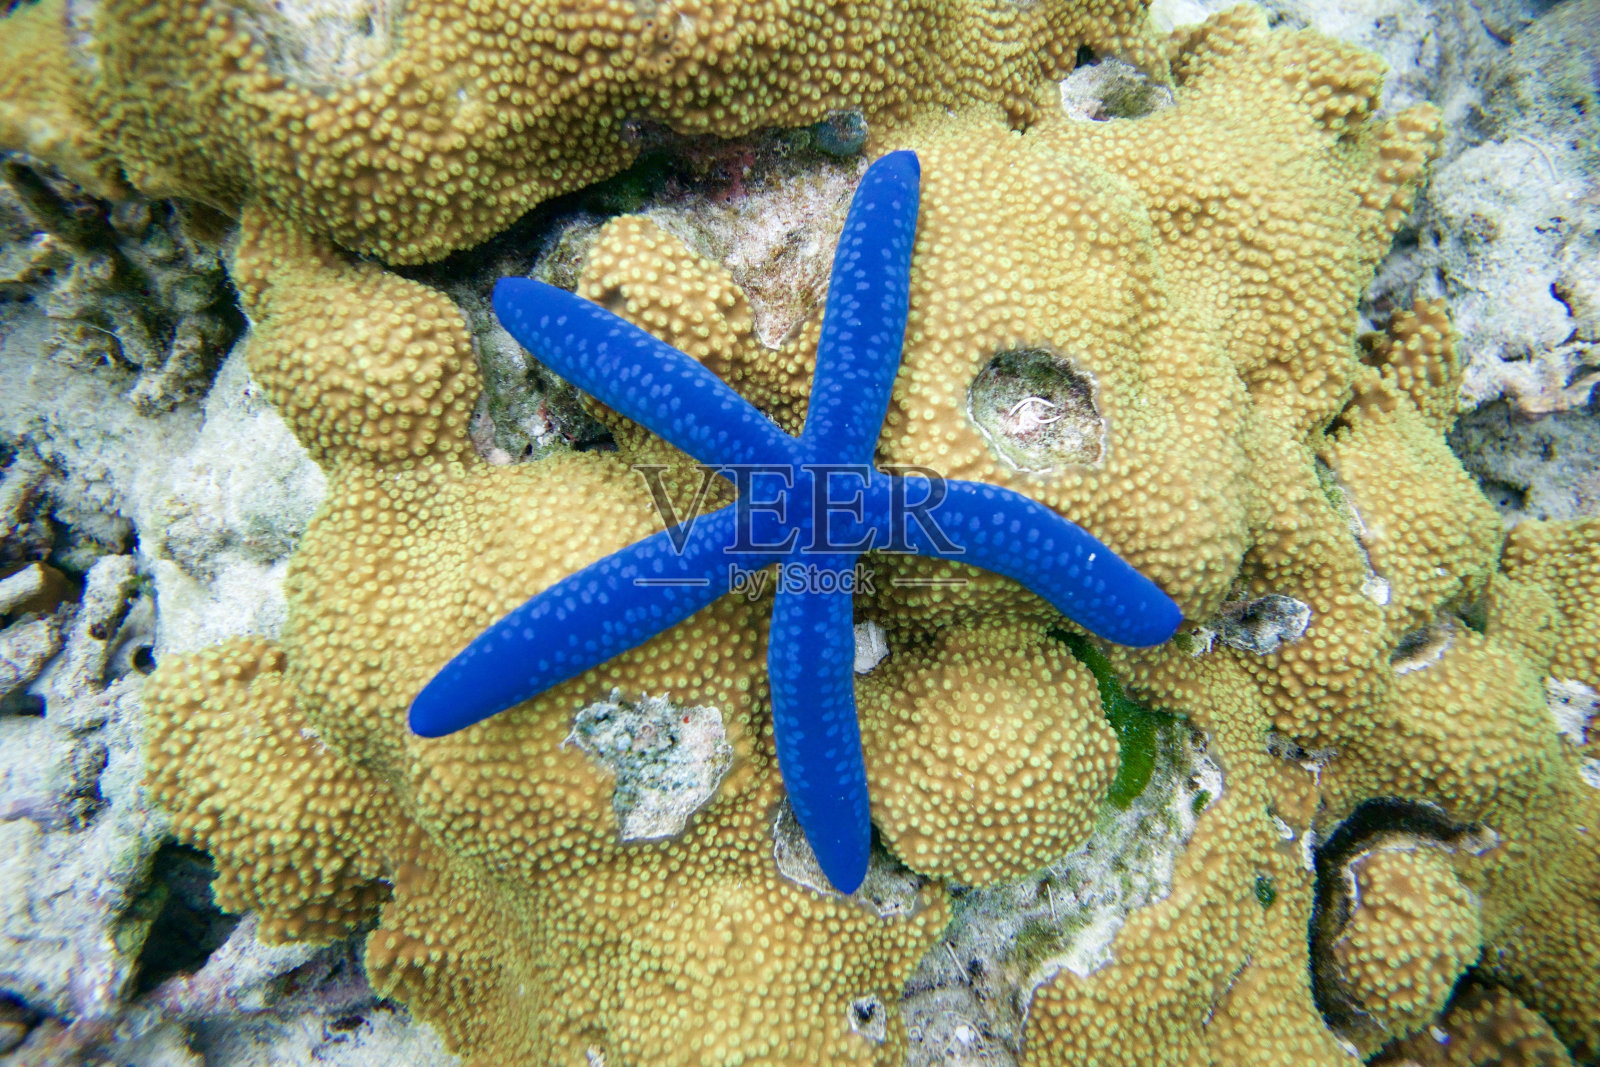 礁石上的蓝星鱼(linkea Laevigata)照片摄影图片